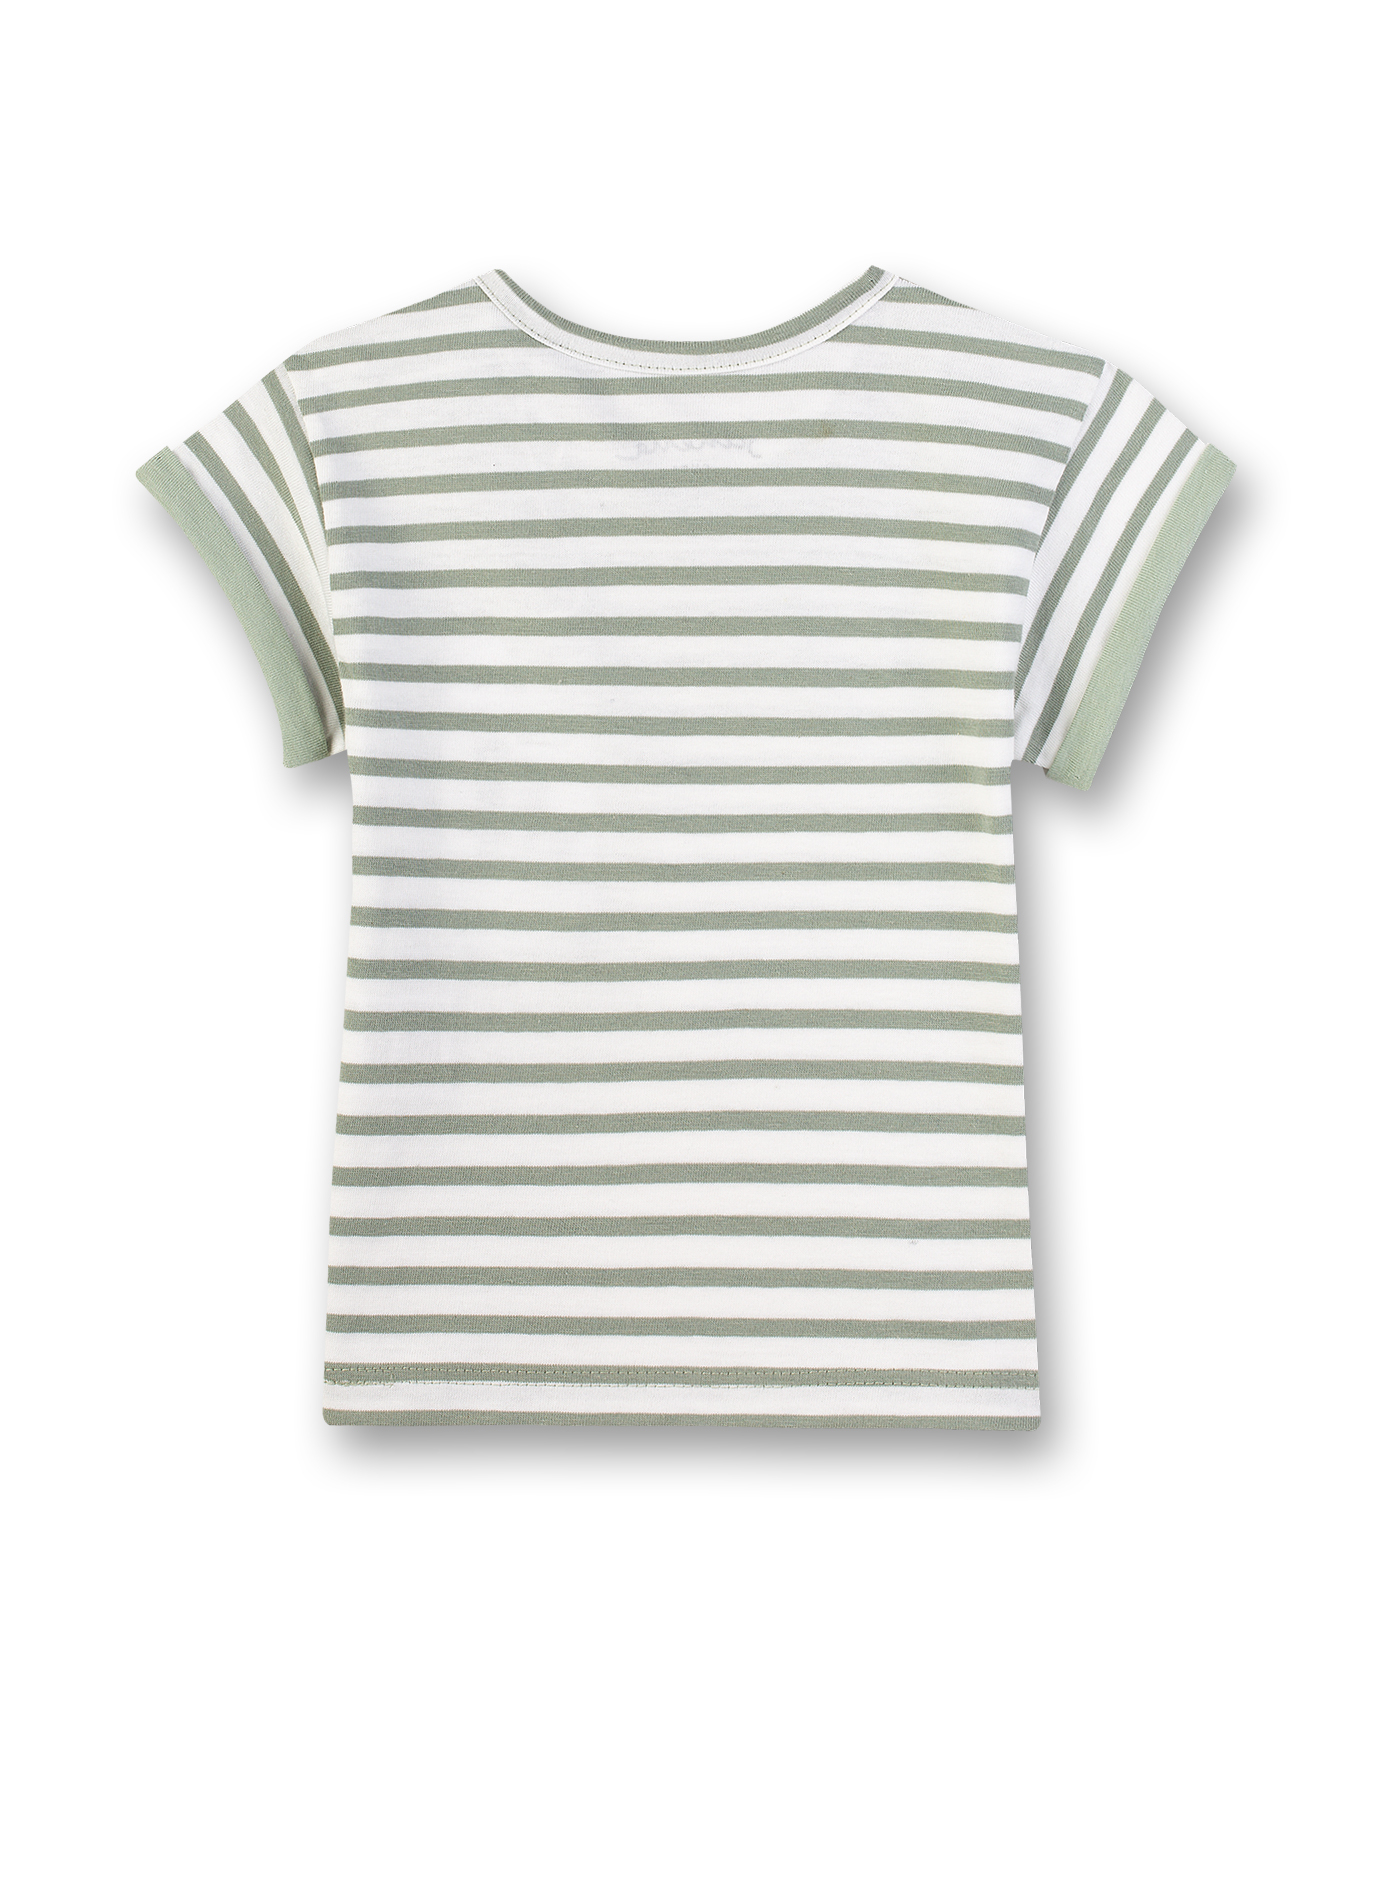 Unisex T-Shirt Grün-geringelt